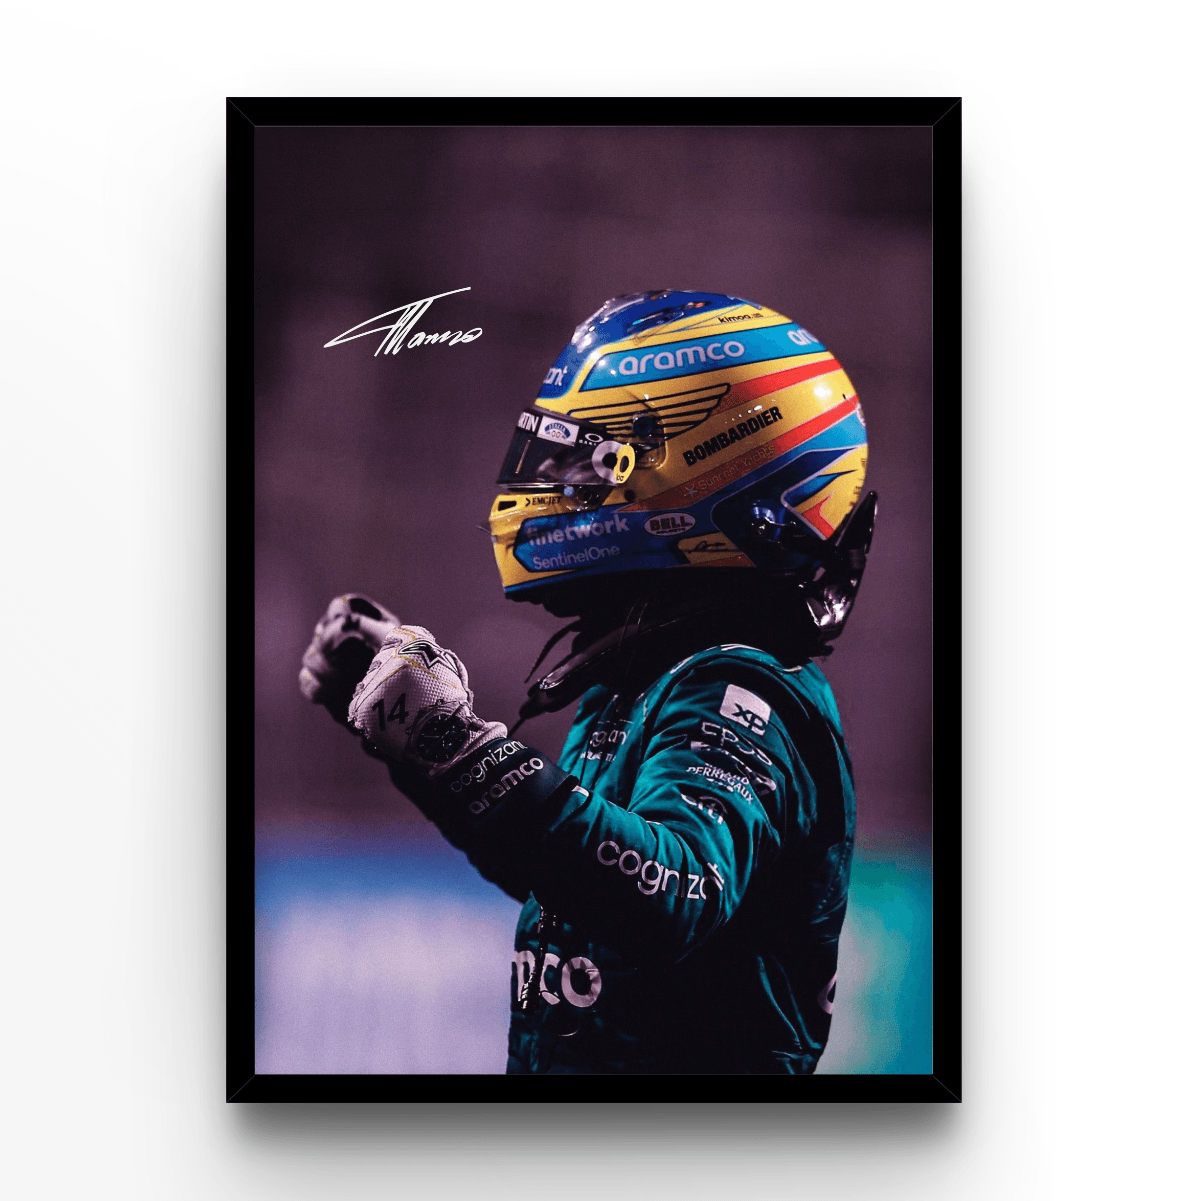 Fernando Alonso 2 - A4, A3, A2 Posters Base - Poster Print Shop / Art Prints / PostersBase